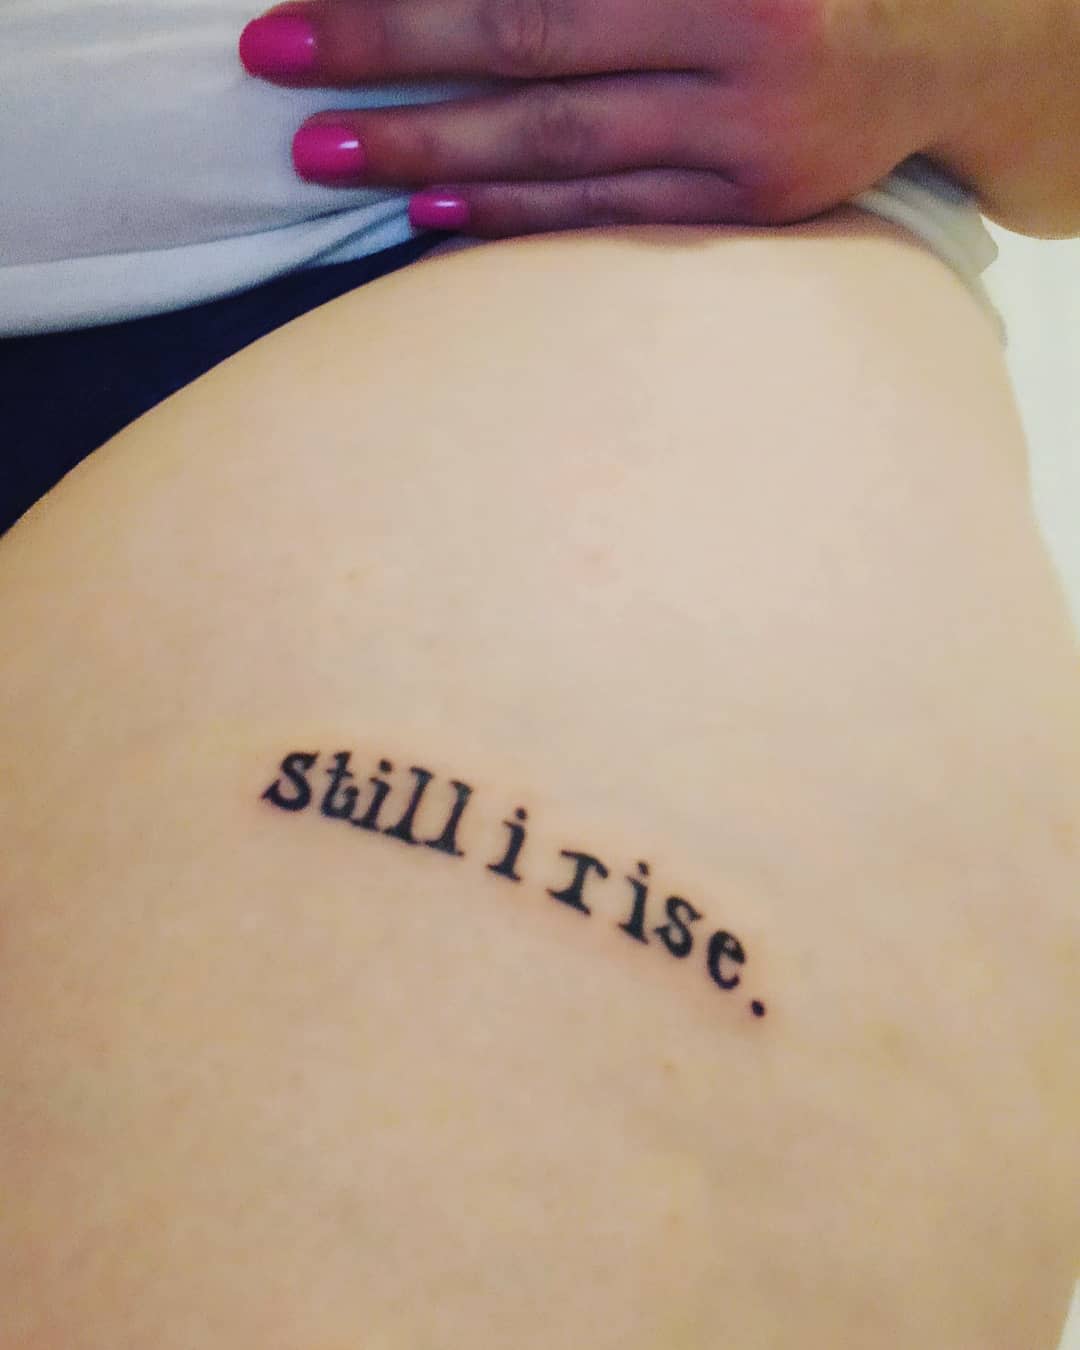 Simple Still I Rise Tattoo -amee.g